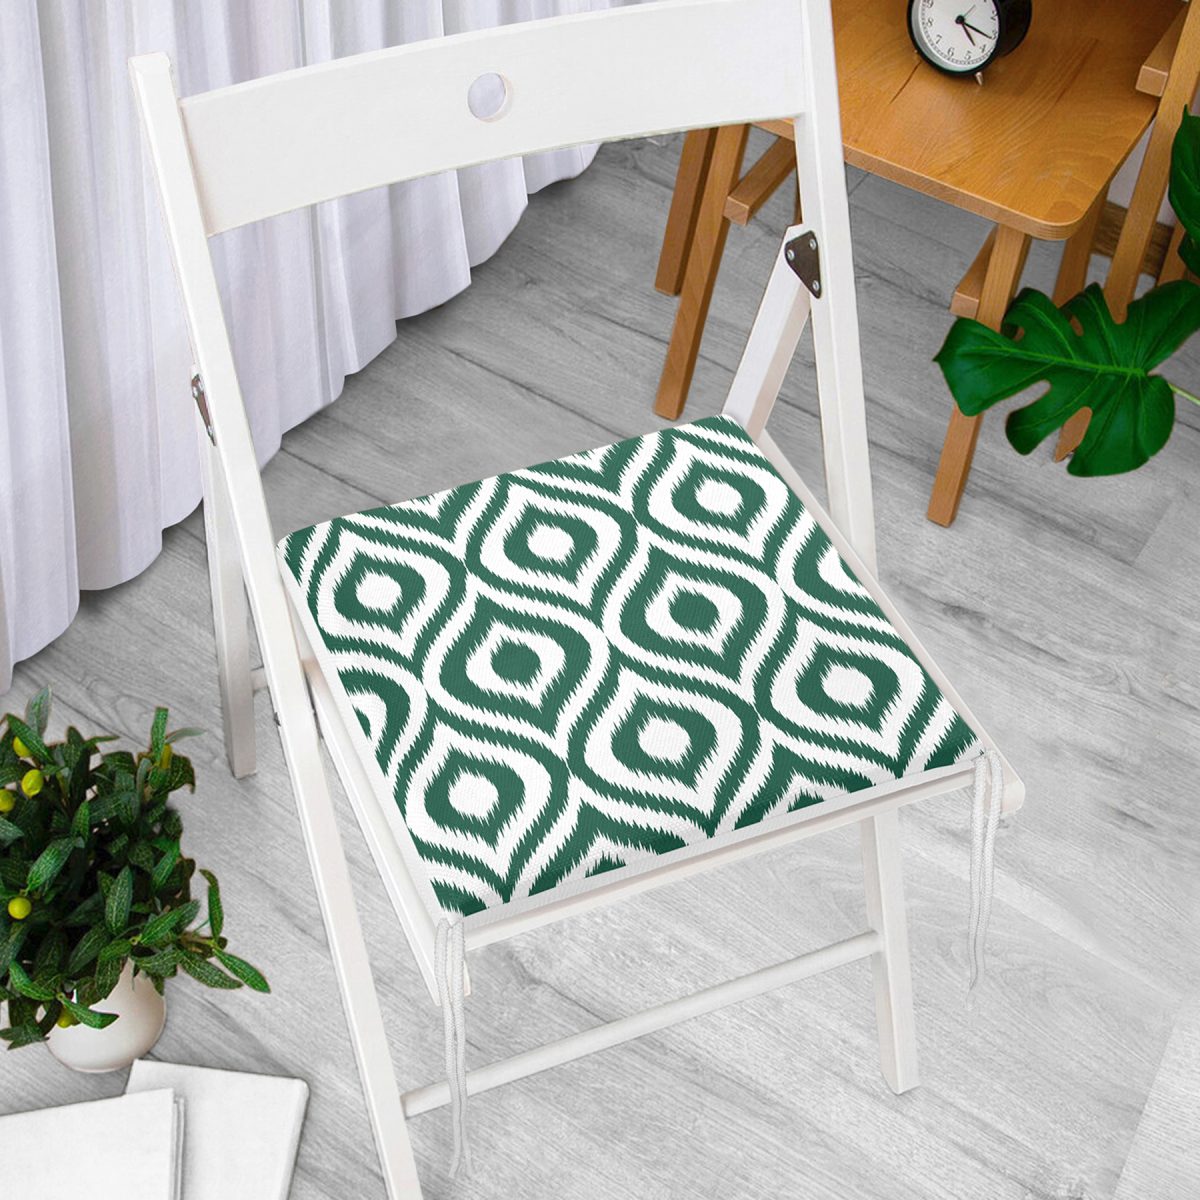 Özel Tasarım Koyu Yeşil İkat Desenli Dijital Baskılı Fermuarlı Sandalye Minderi Realhomes